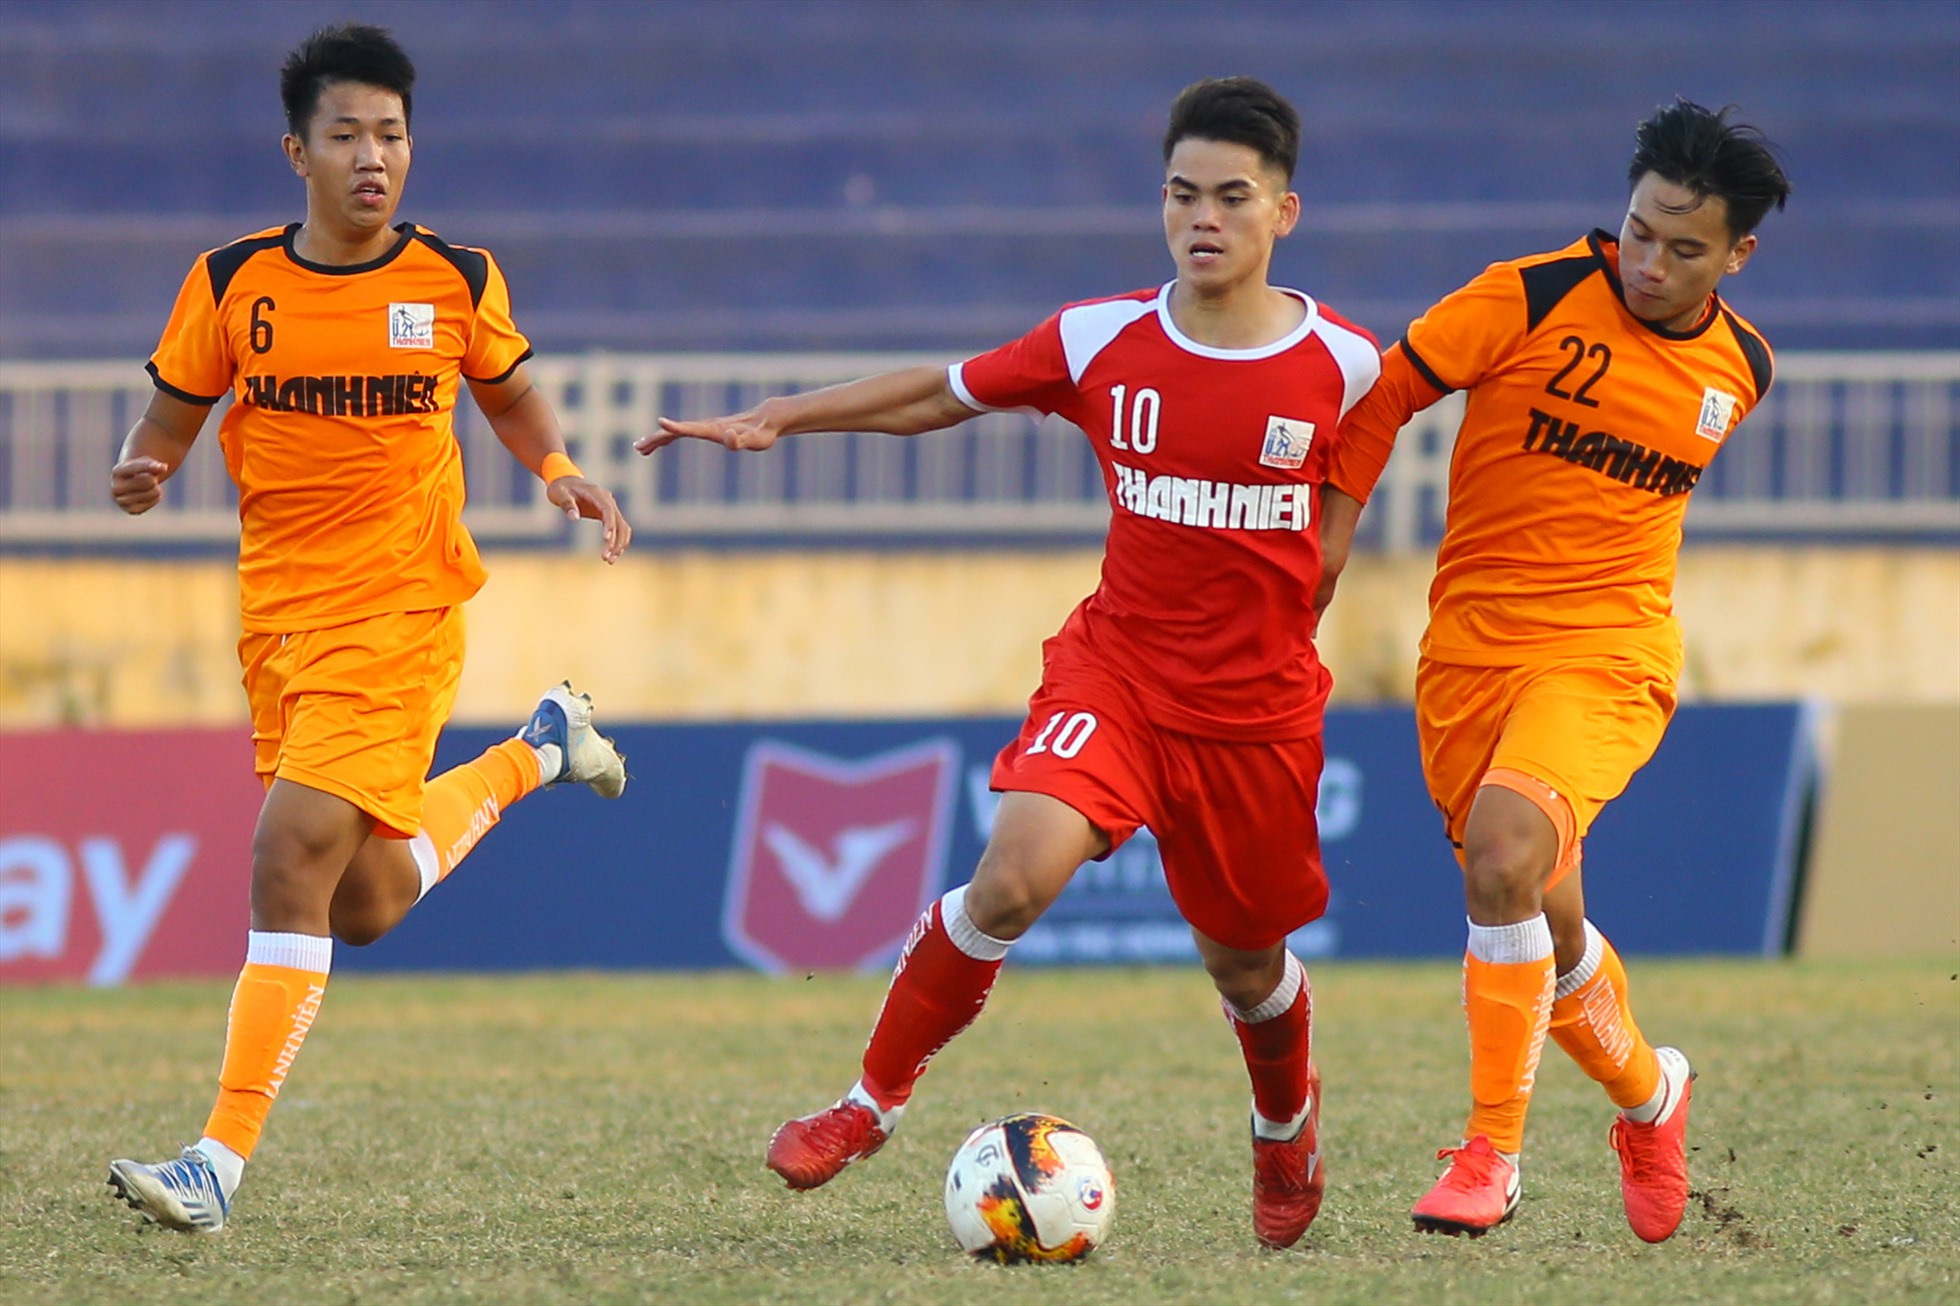 Ngoài Phan Tuấn Tài, cánh trái của U21 Viettel còn có sự xuất hiện của Khuất Văn Khang - cầu thủ vừa trở về từ đội tuyển quốc gia.